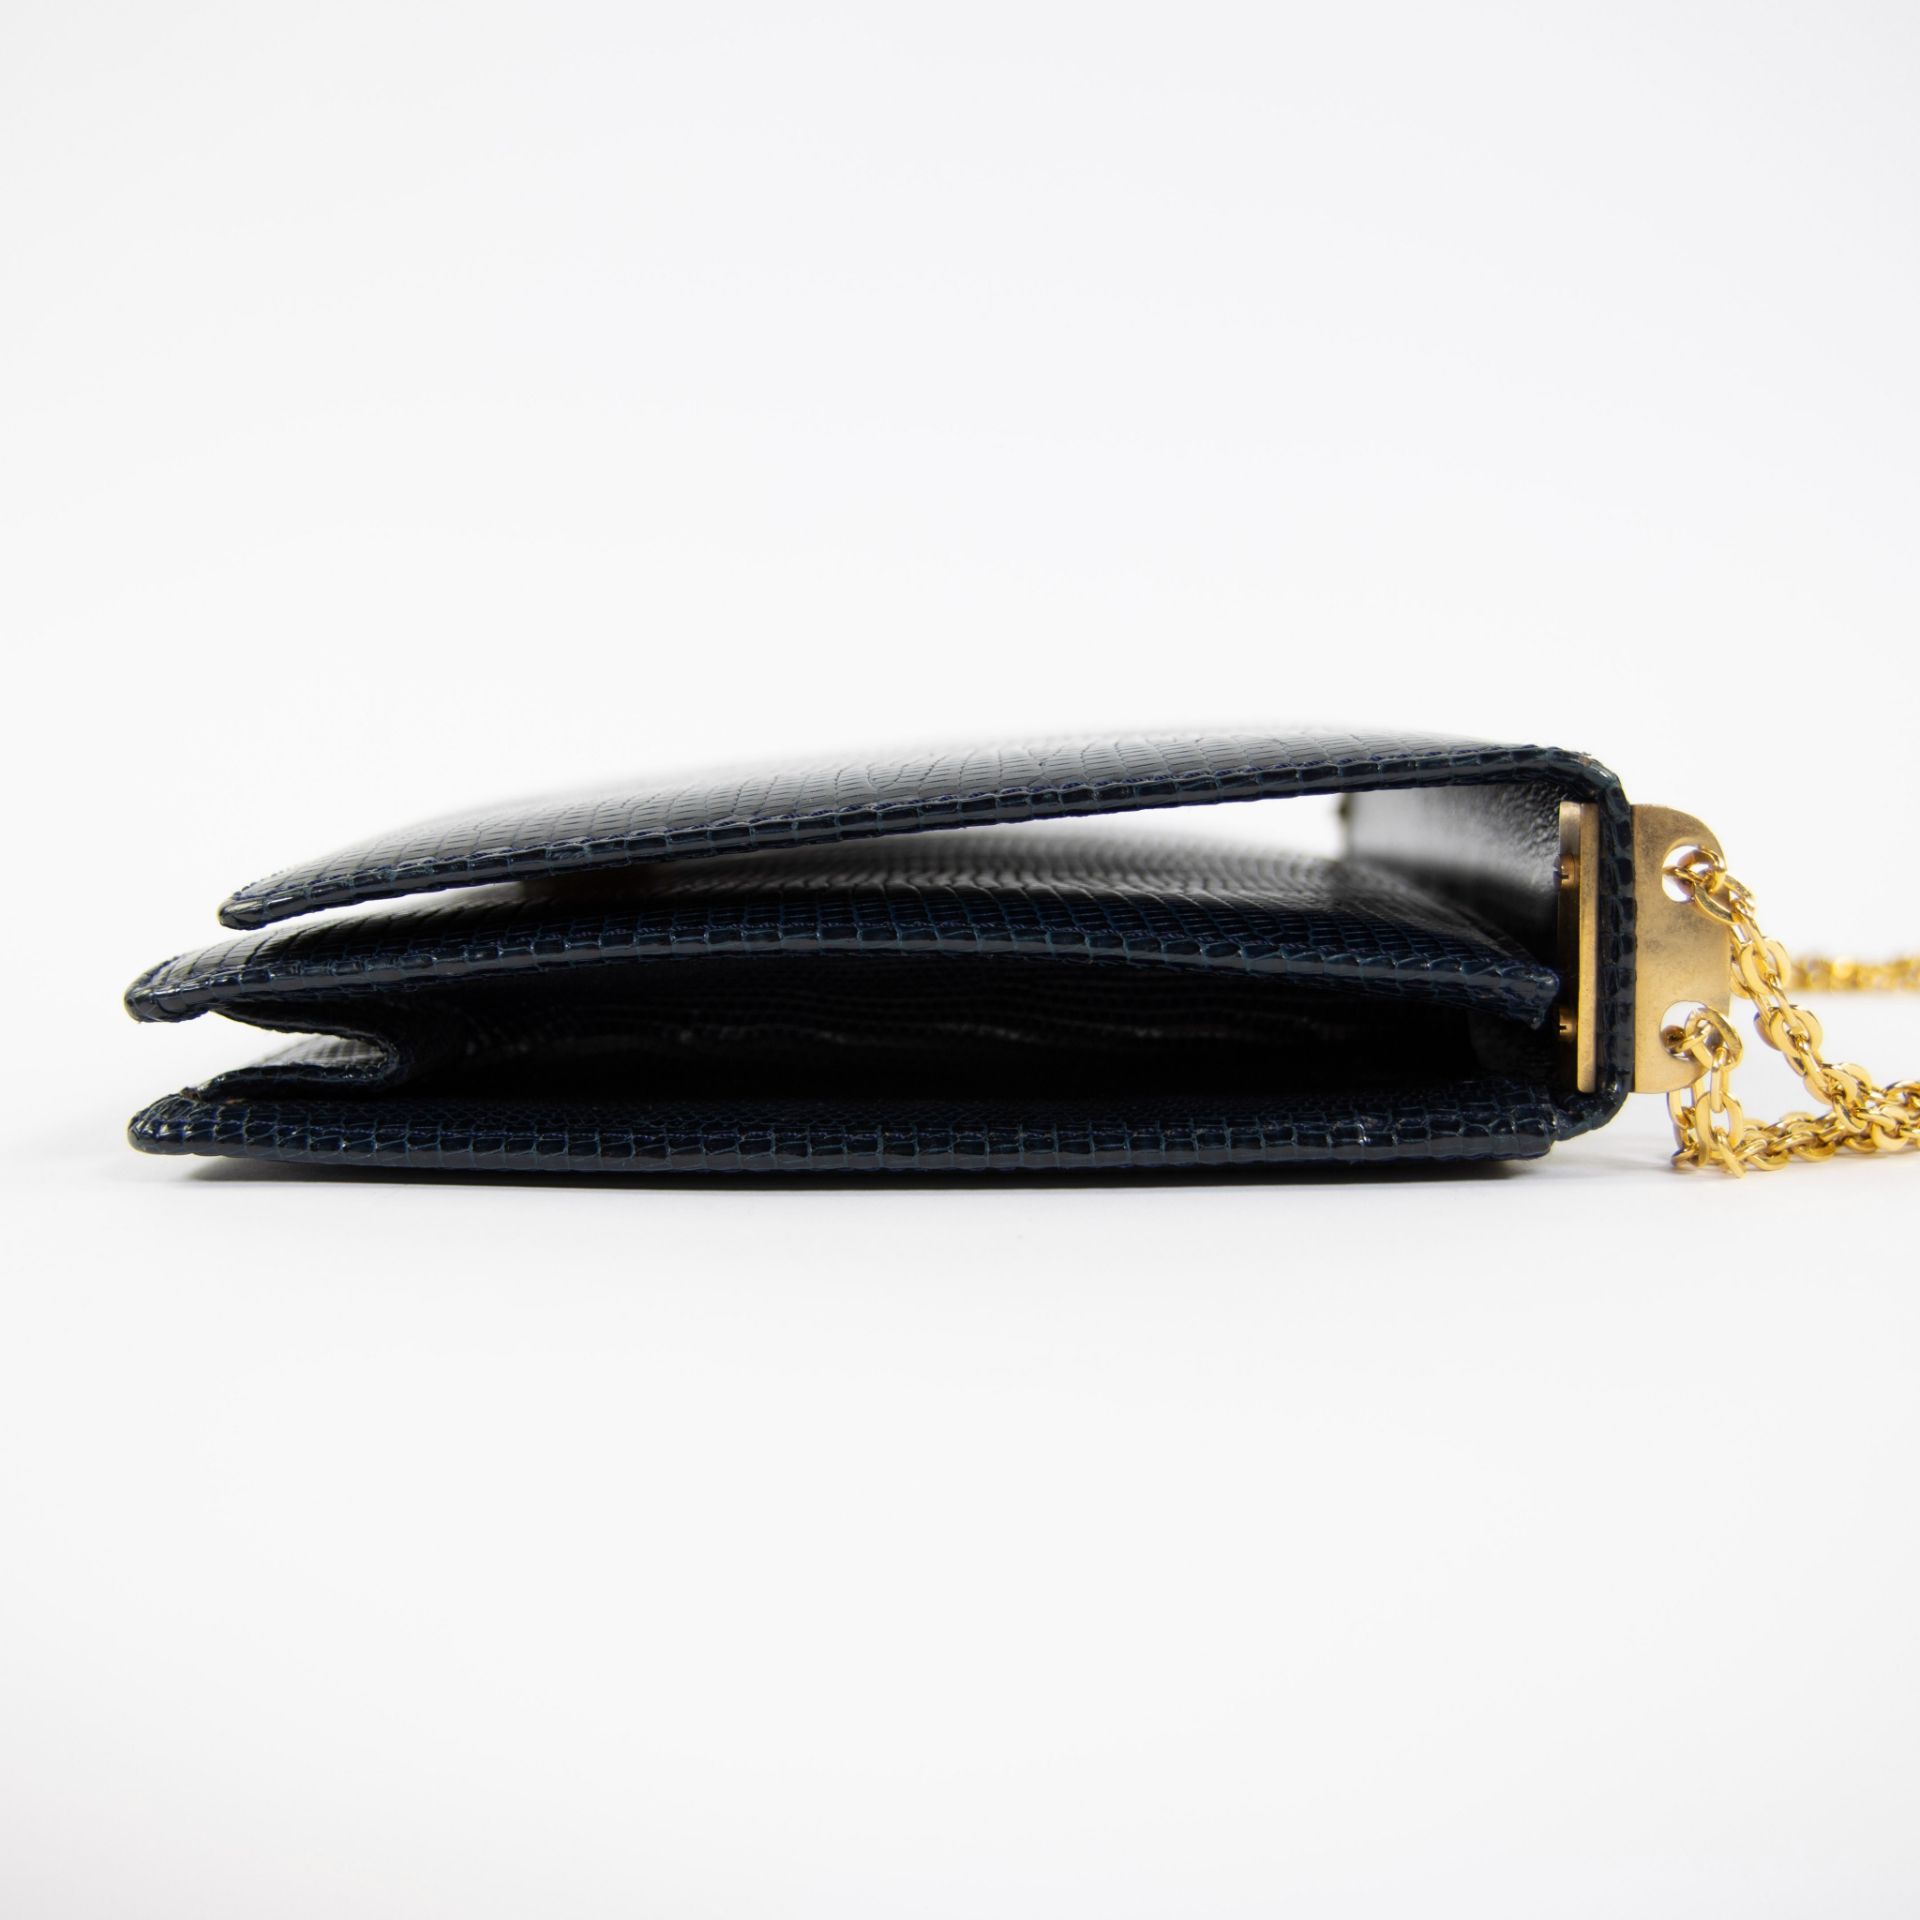 Vintage Delvaux handbag in crocodile - Image 4 of 6